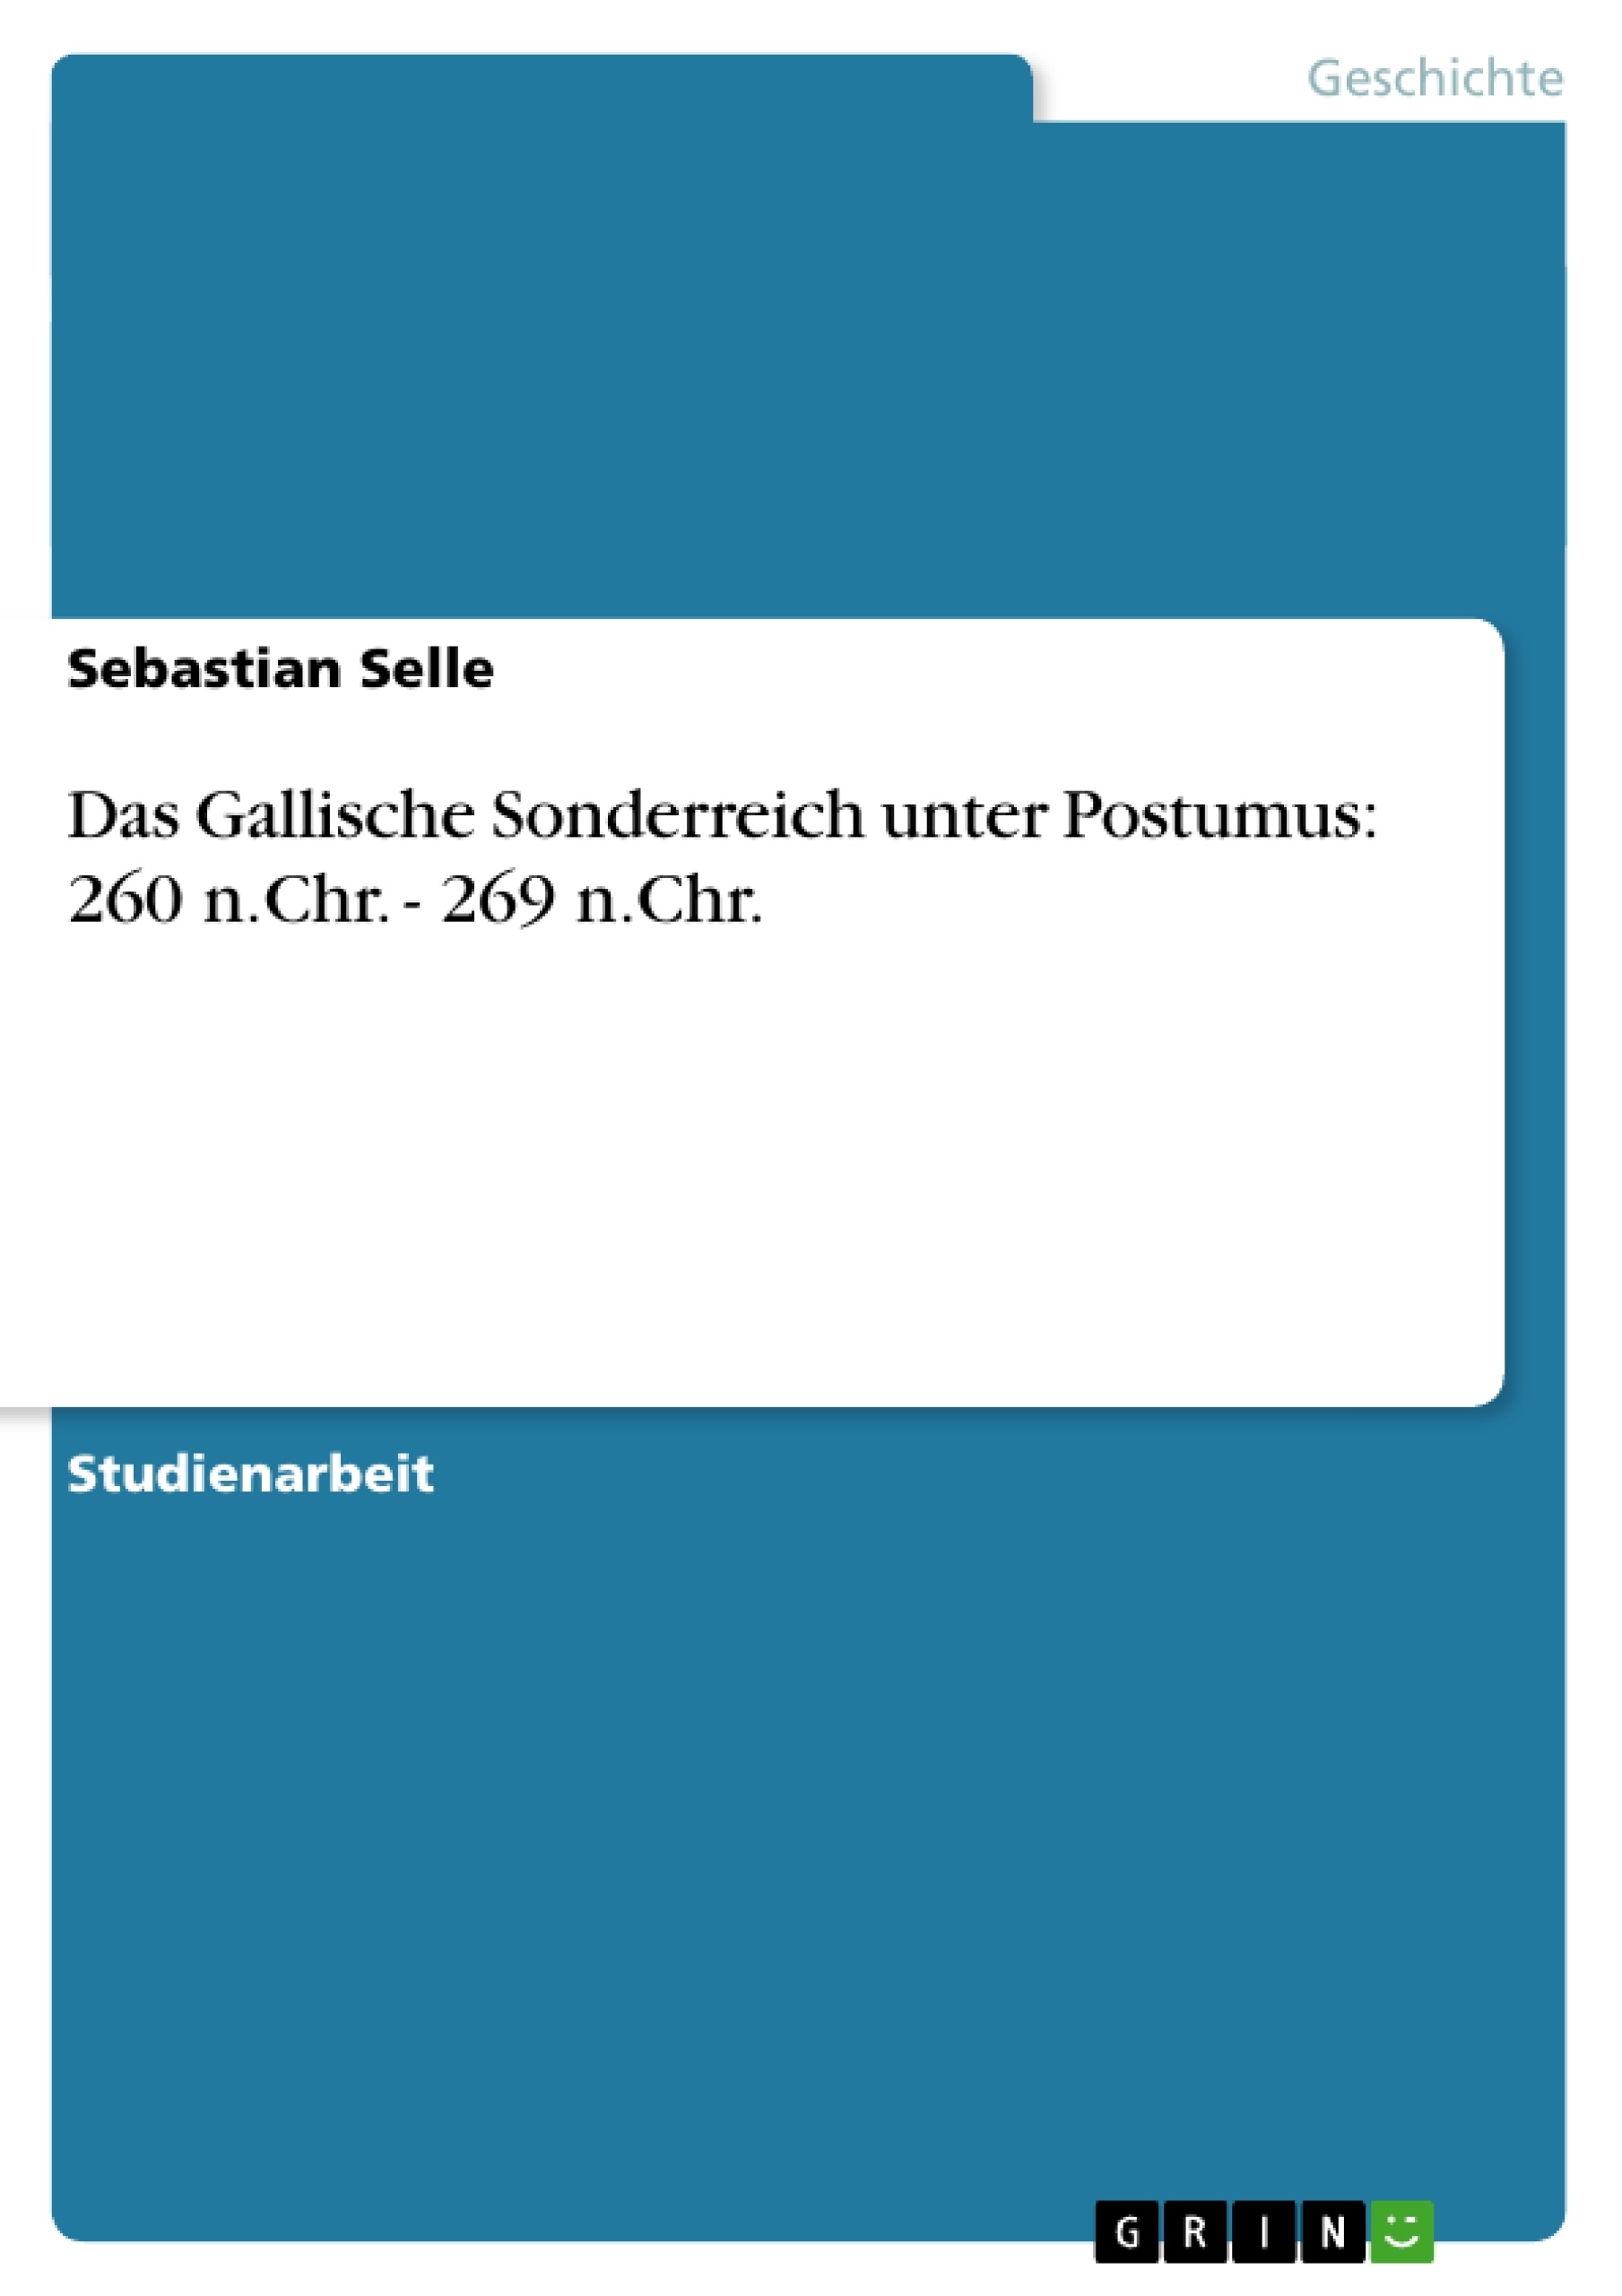 Título: Das Gallische Sonderreich unter Postumus: 260 n.Chr. - 269 n.Chr.